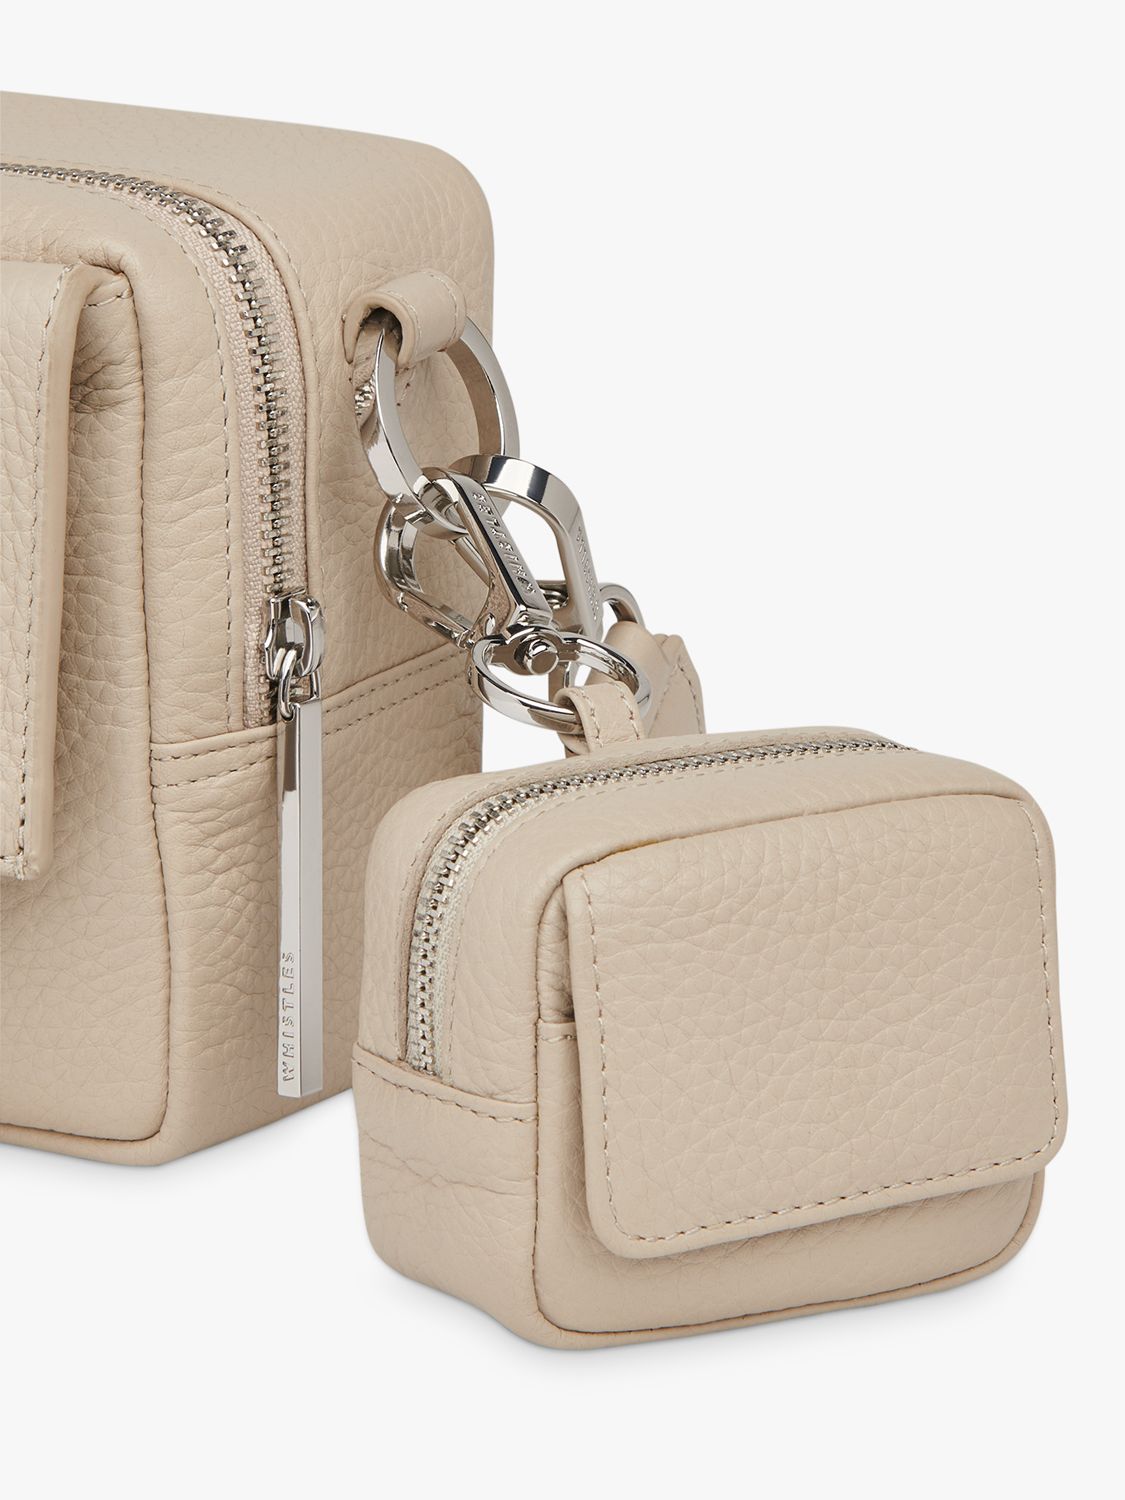 Whistles Bibi Mini Keyring Bag, Taupe, One Size